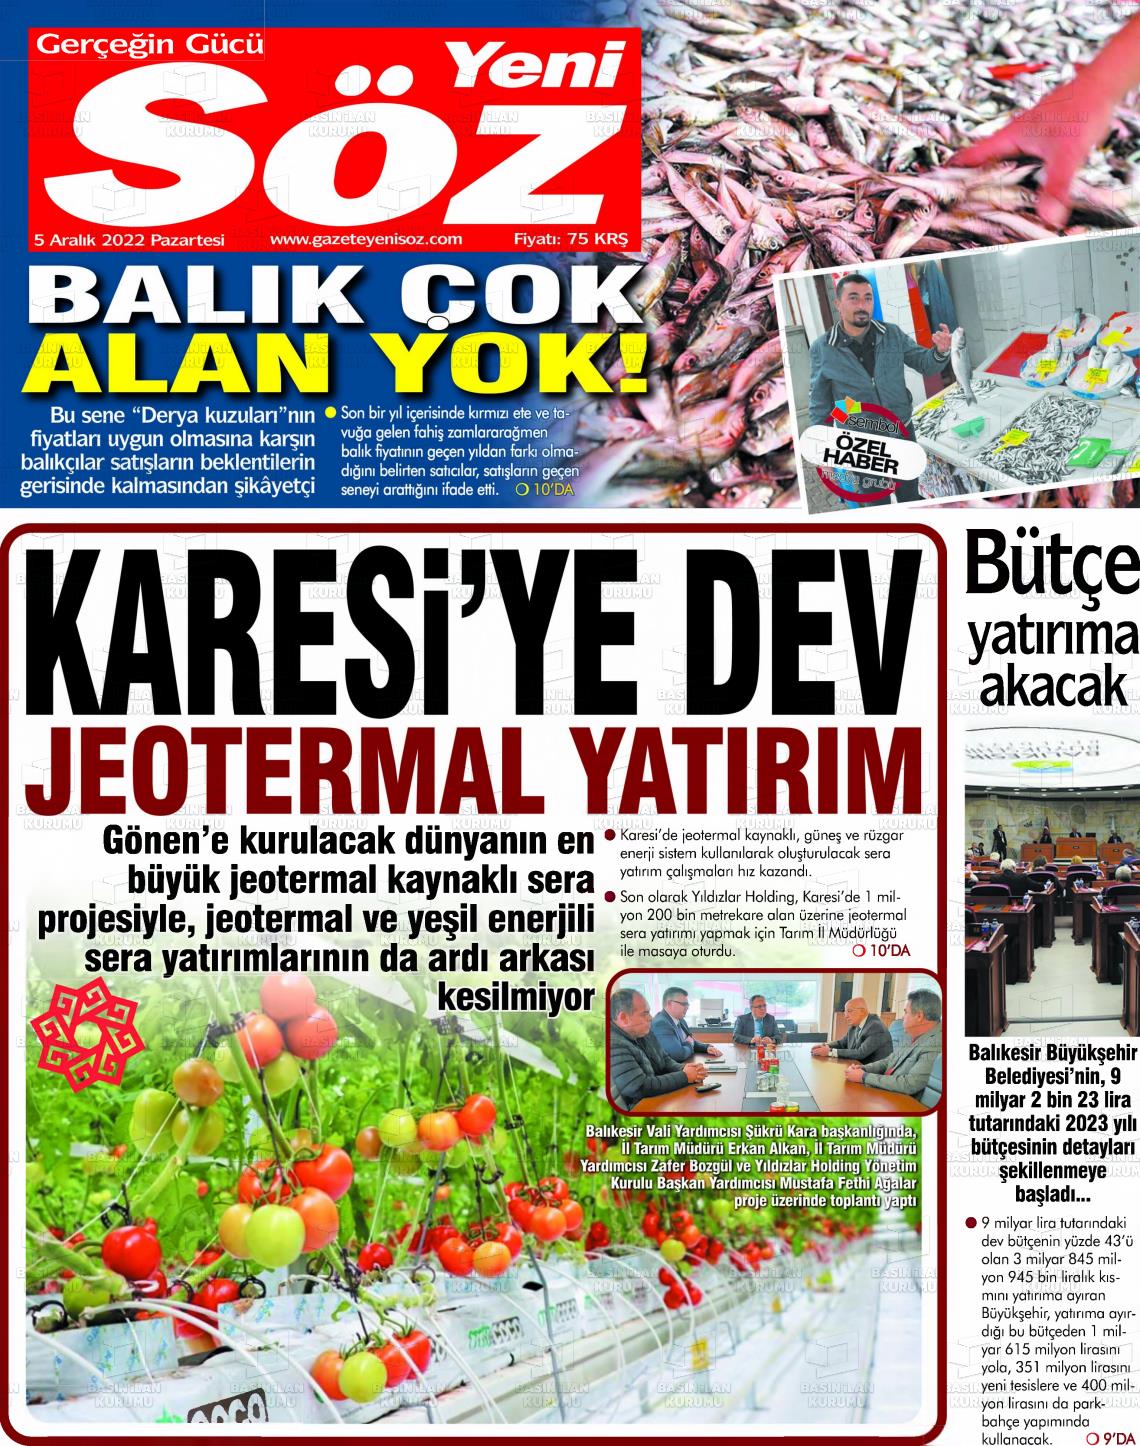 05 Aralık 2022 Yeni Söz Gazete Manşeti